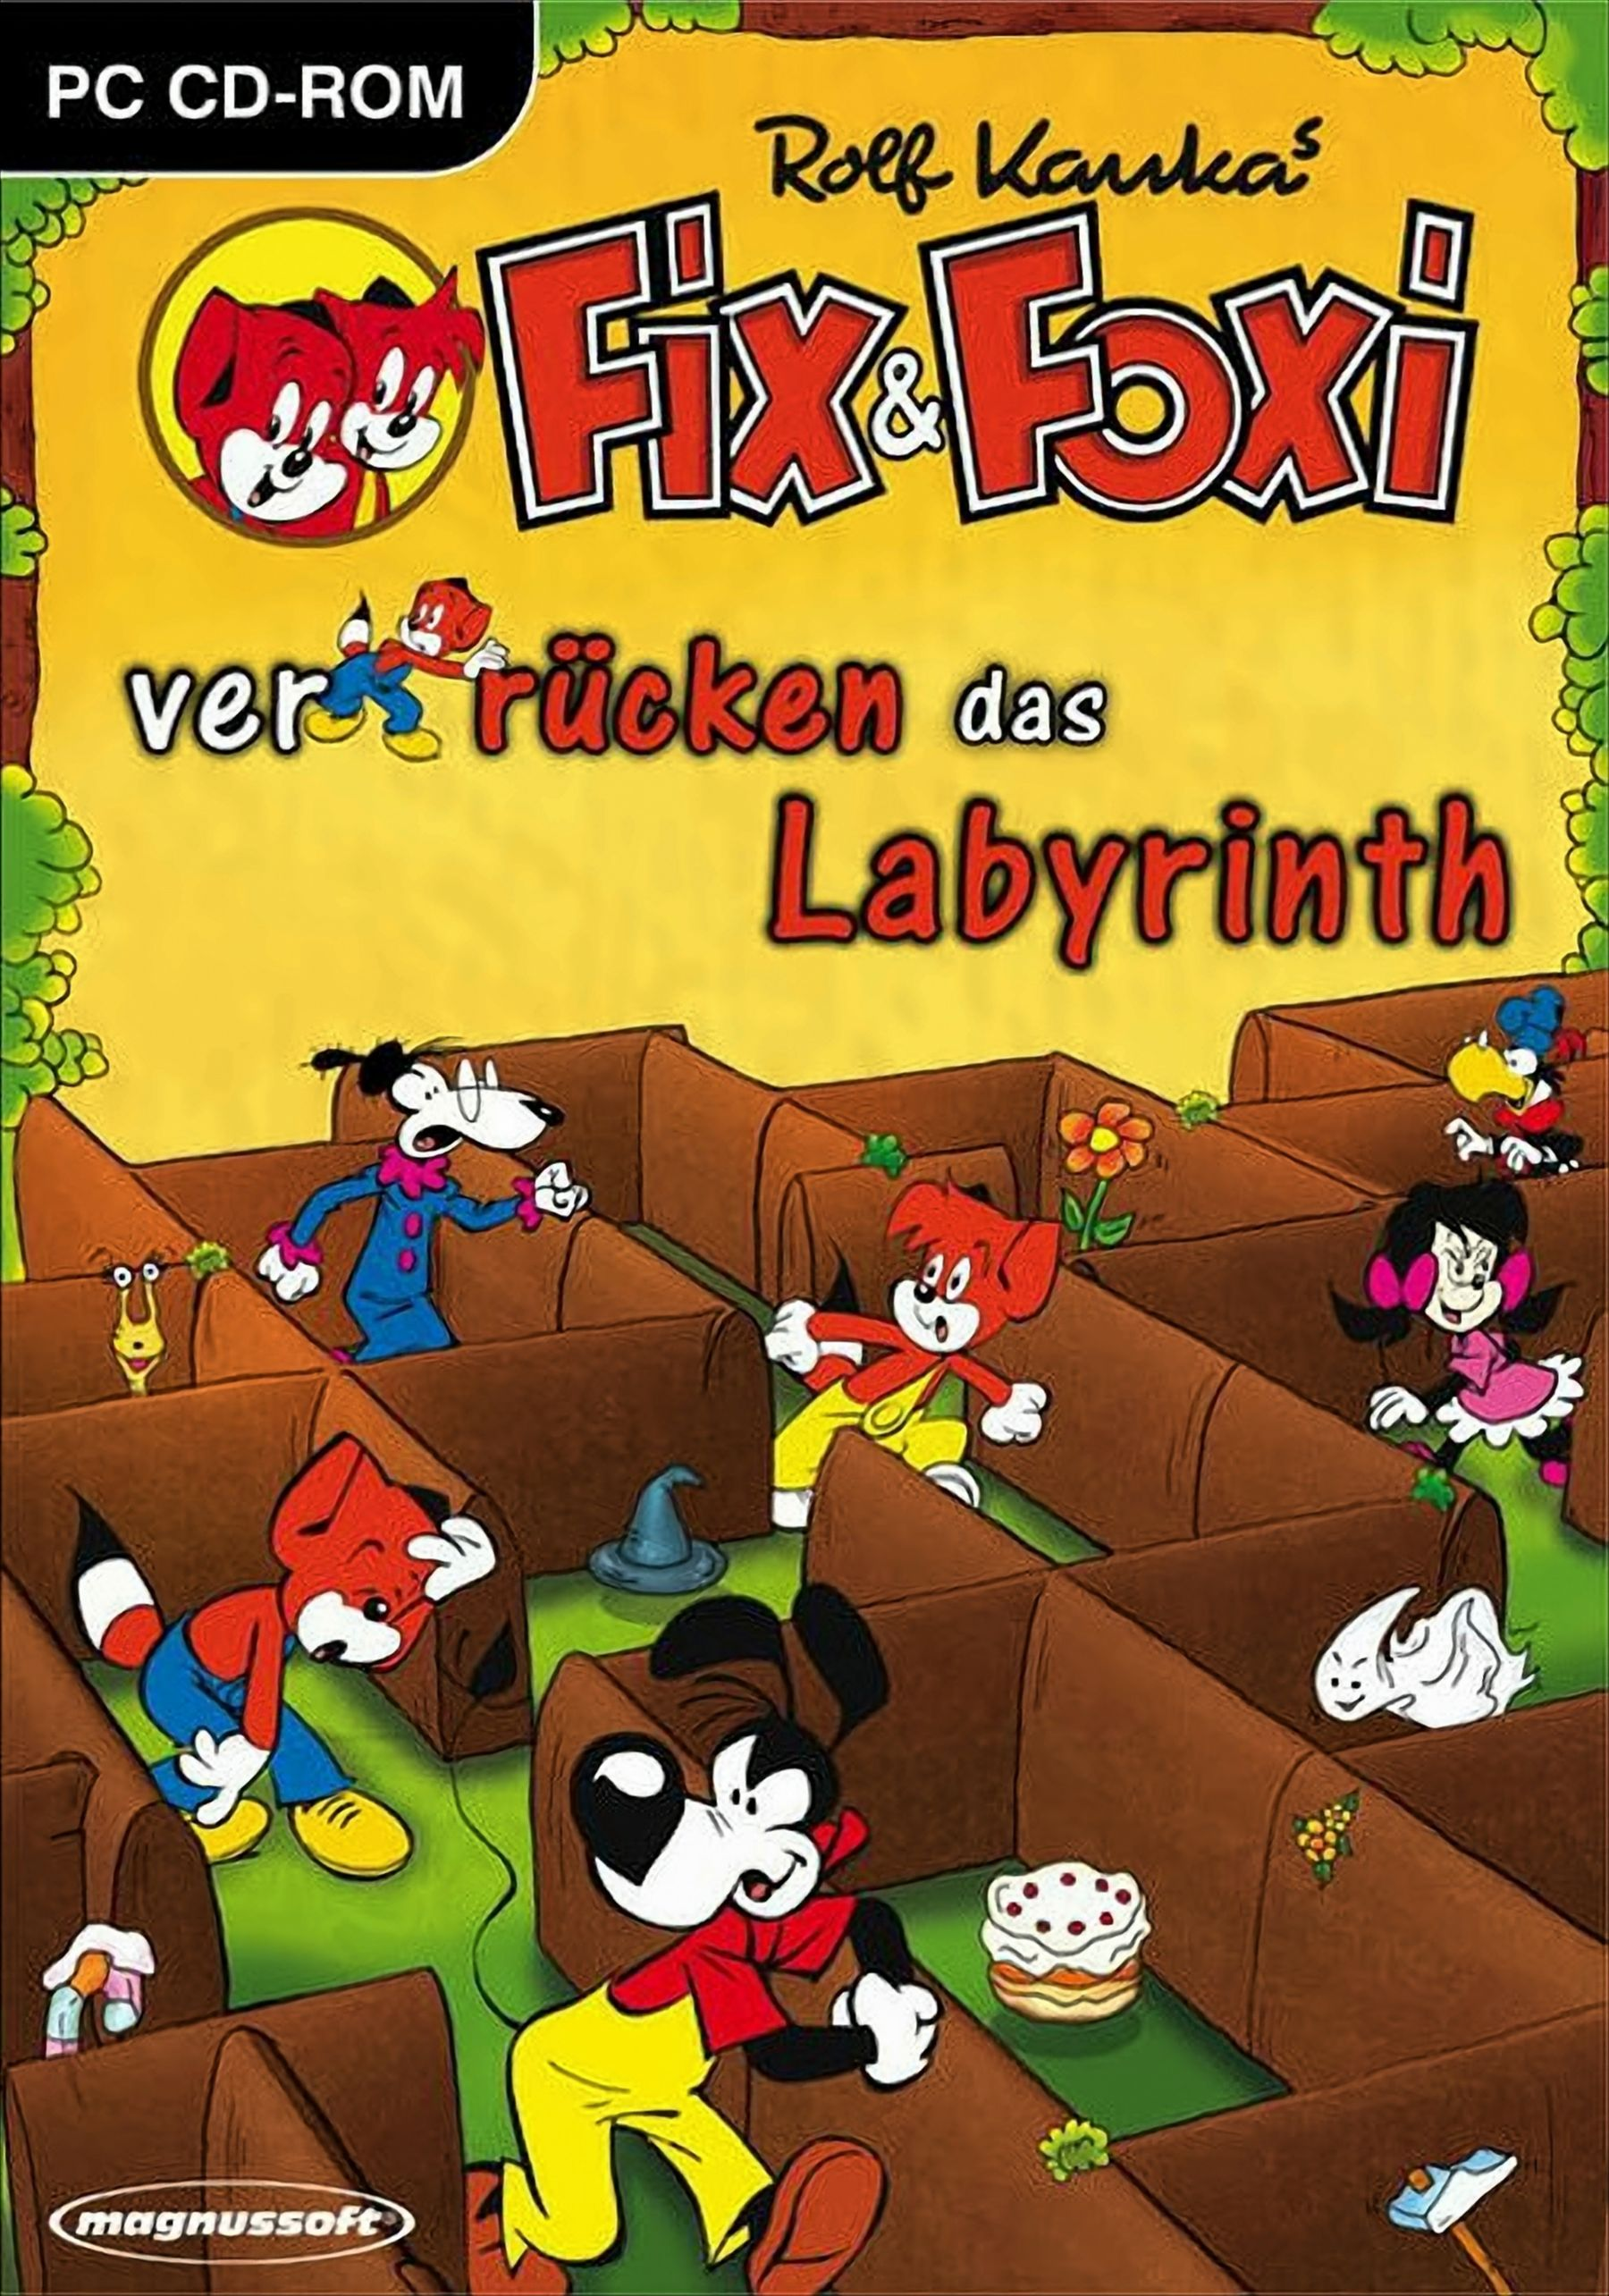 Fix & Foxi das - [PC] verrücken Labyrinth